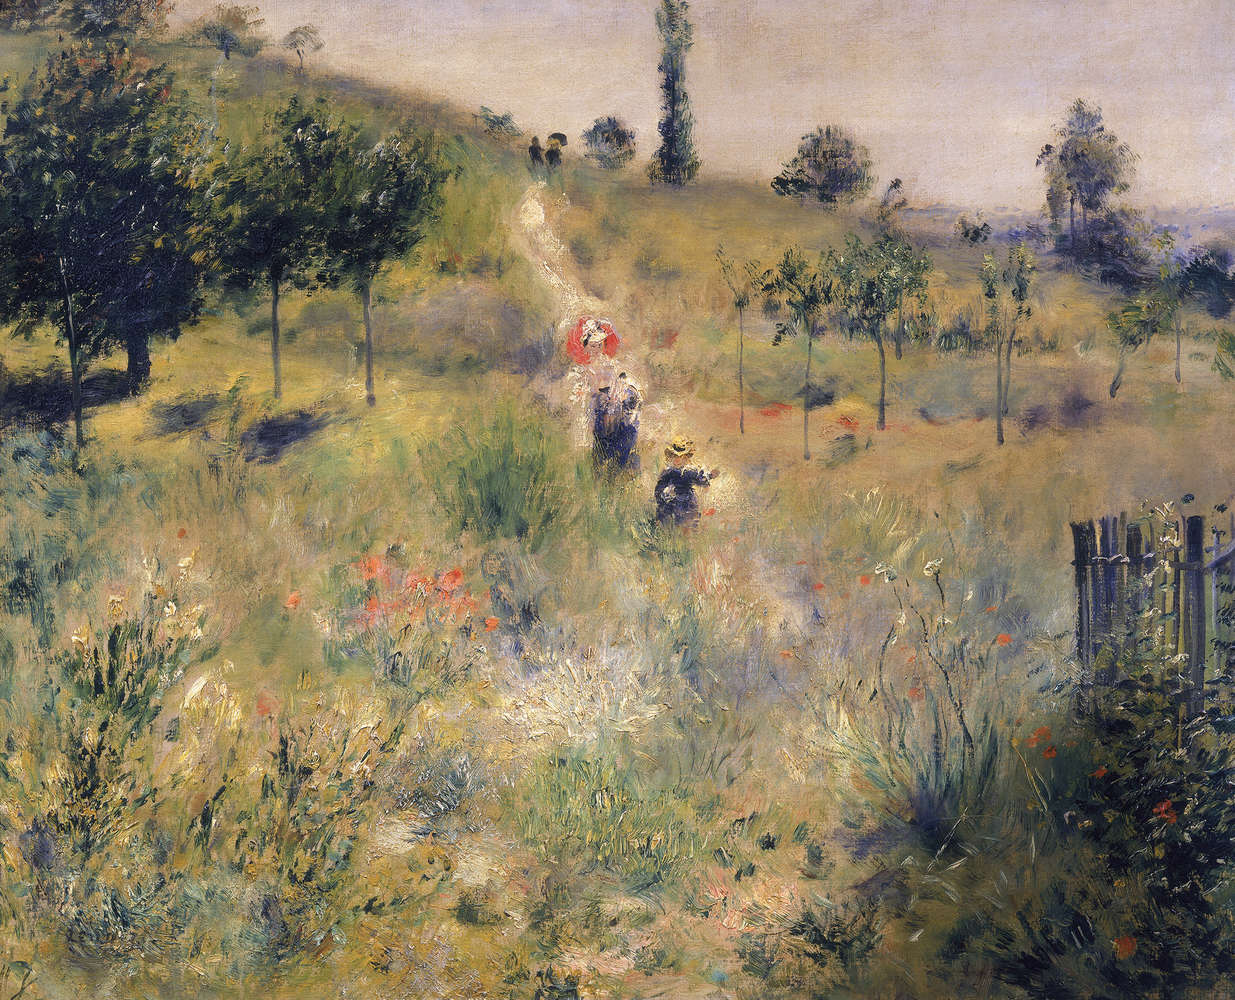             Mural "Camino ascendente a través de la hierba alta" de Pierre Auguste Renoir
        